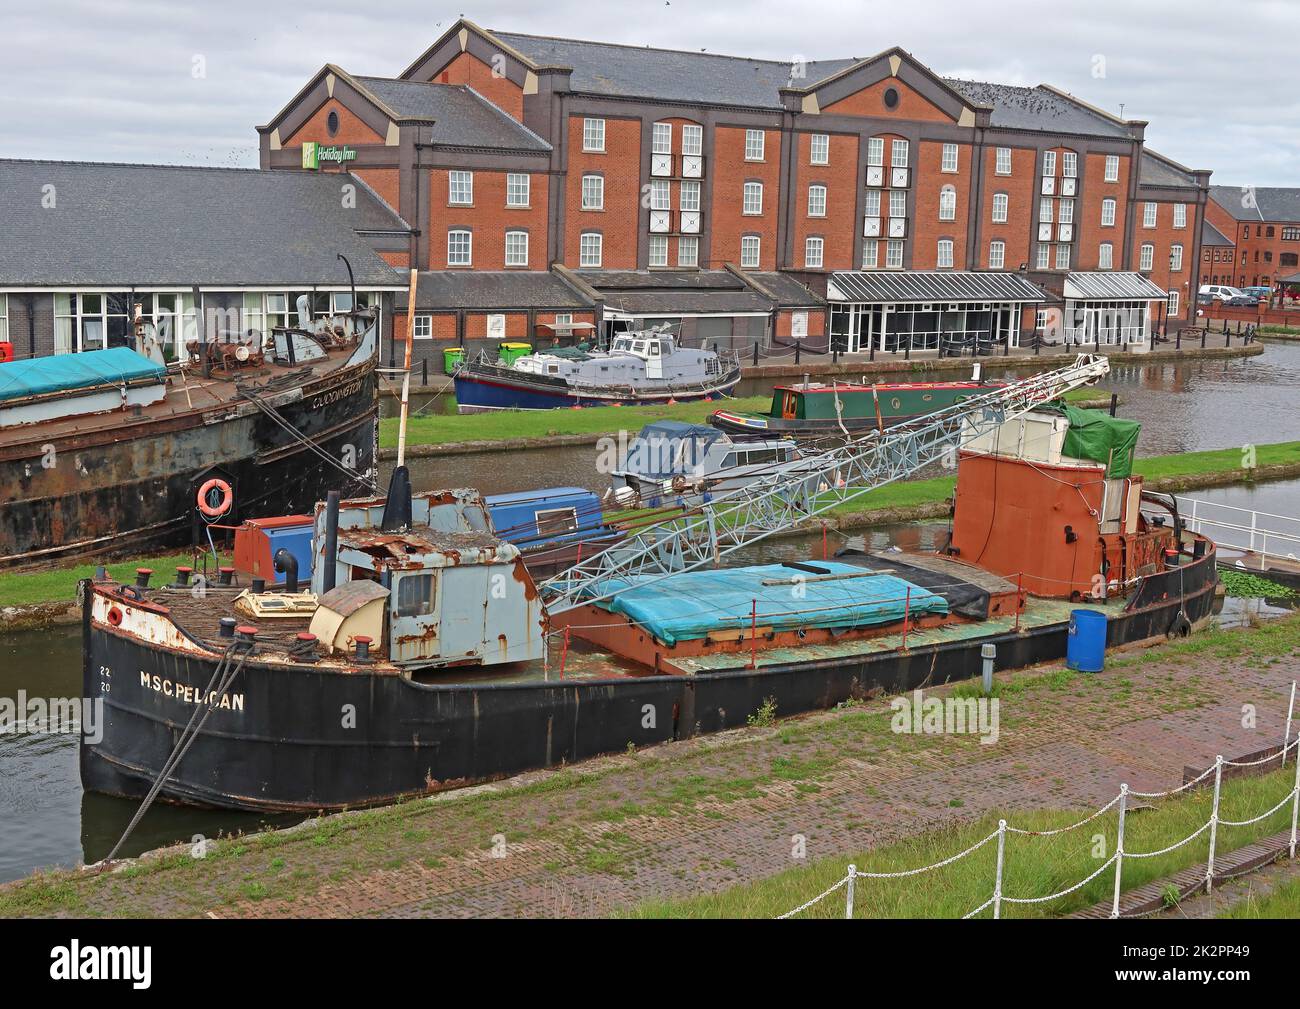 La barge MSC Pelican Manchester, 1956 ex-navire de Manchester bateau-grue canal, utilisé pour les magasins et l'appel d'offres bouy, a été retirée 1980 Banque D'Images